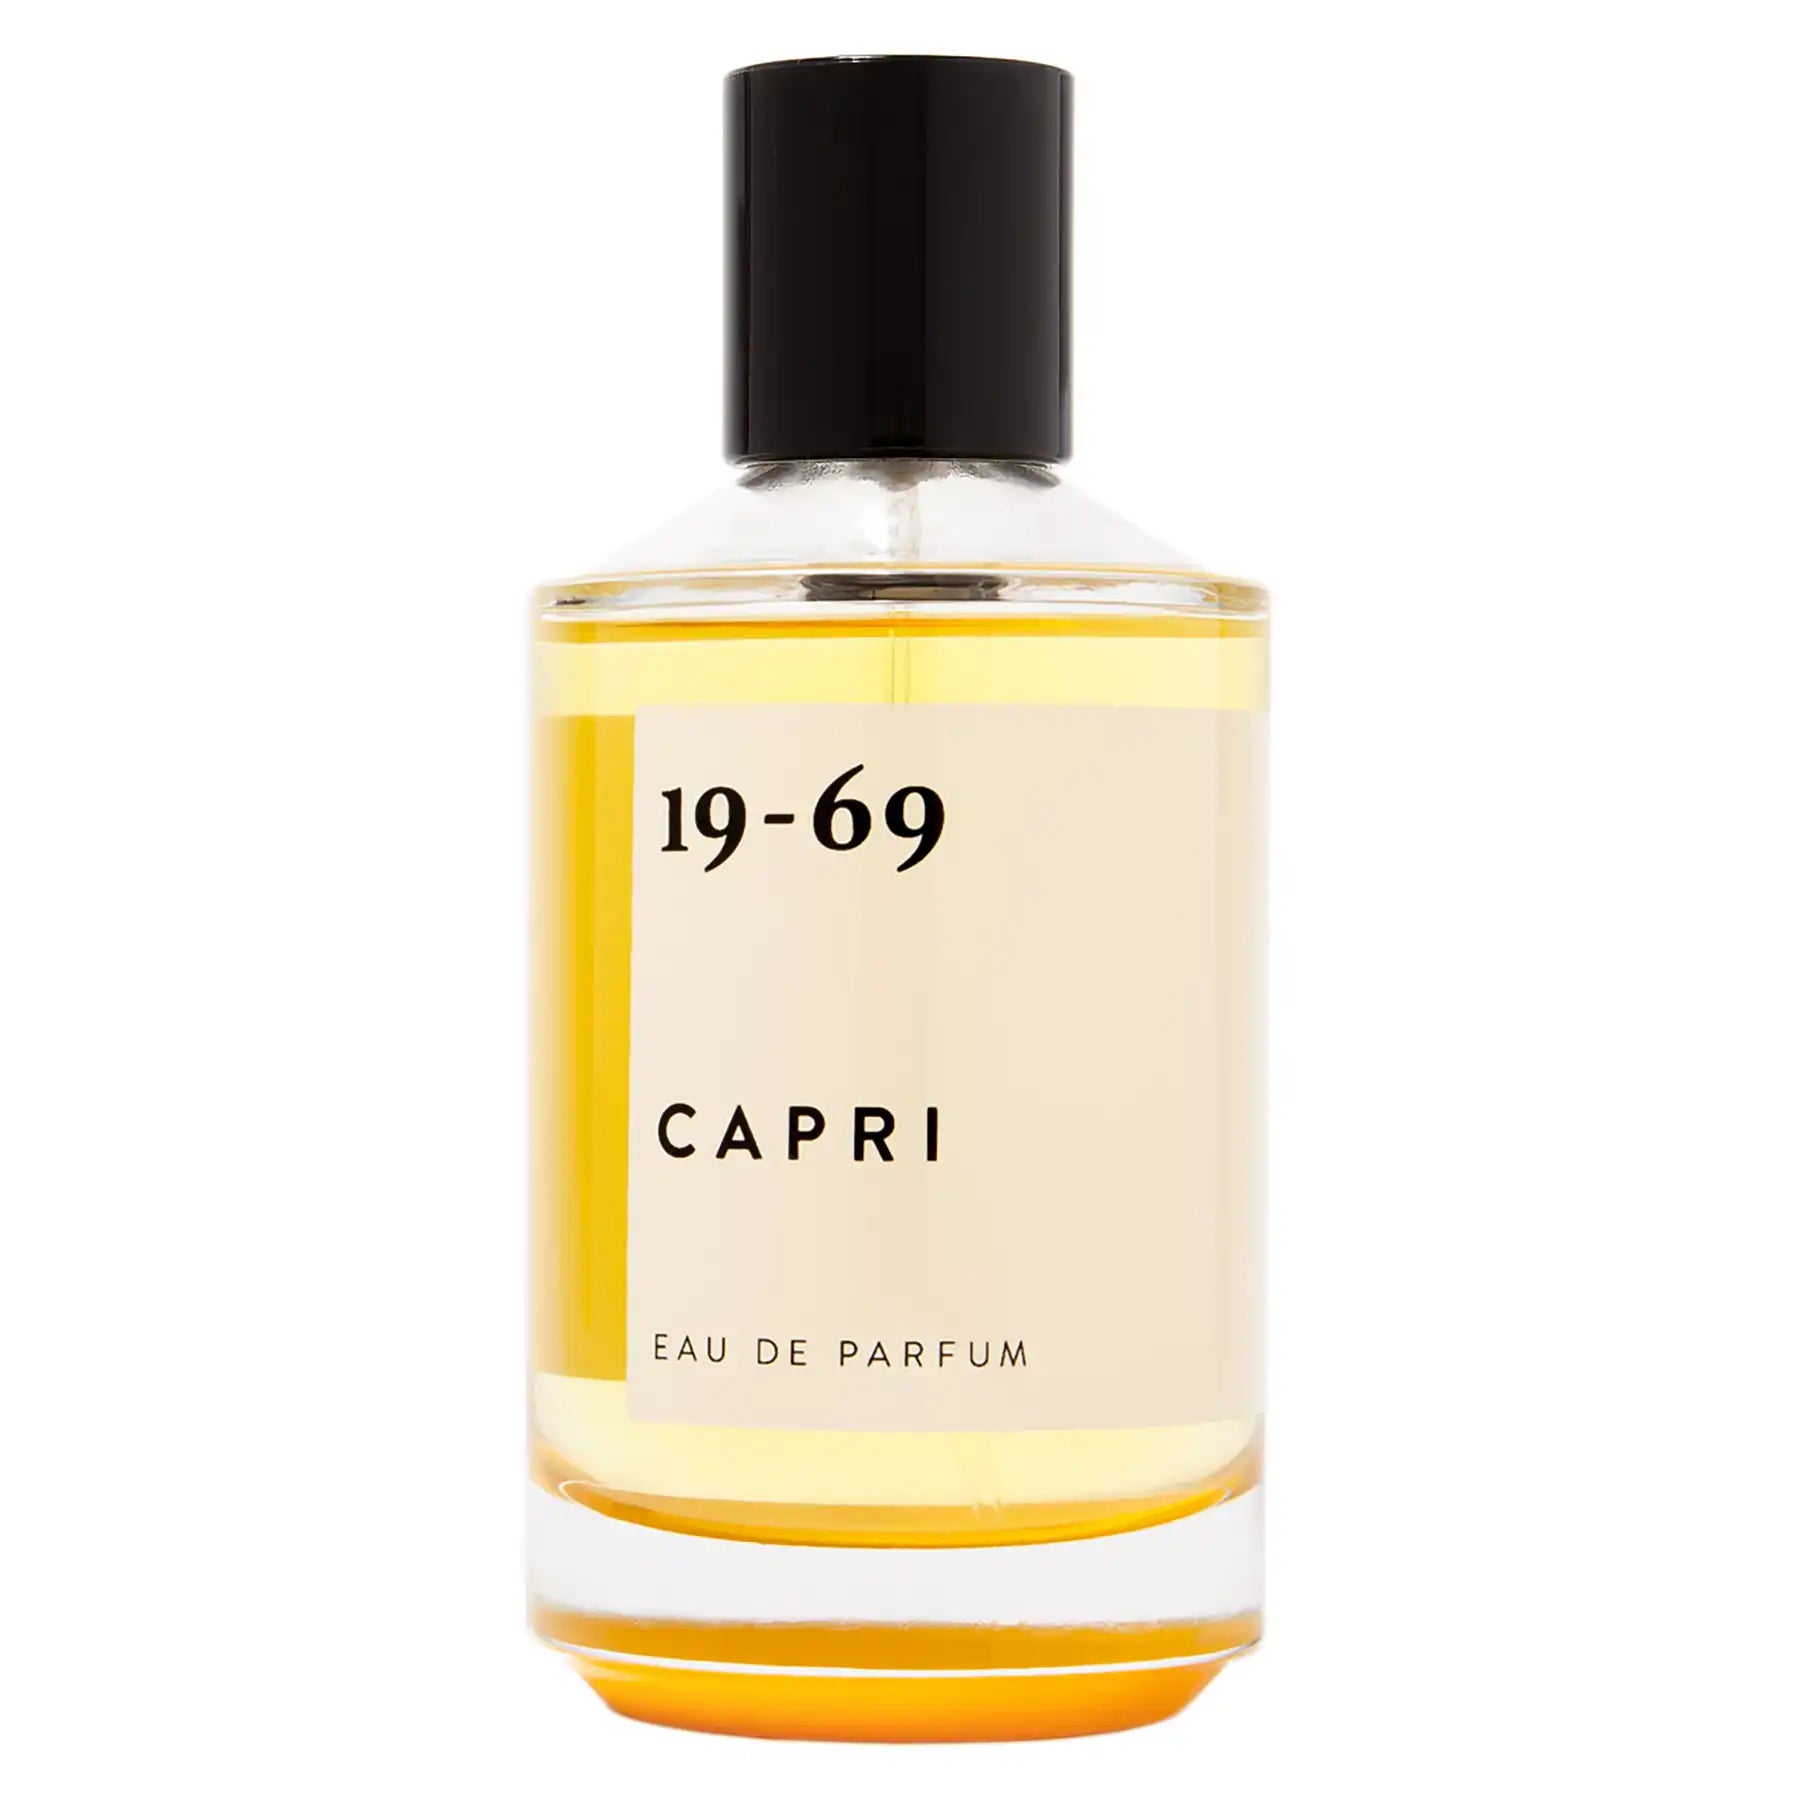 19-69 Capri Eau de Parfum